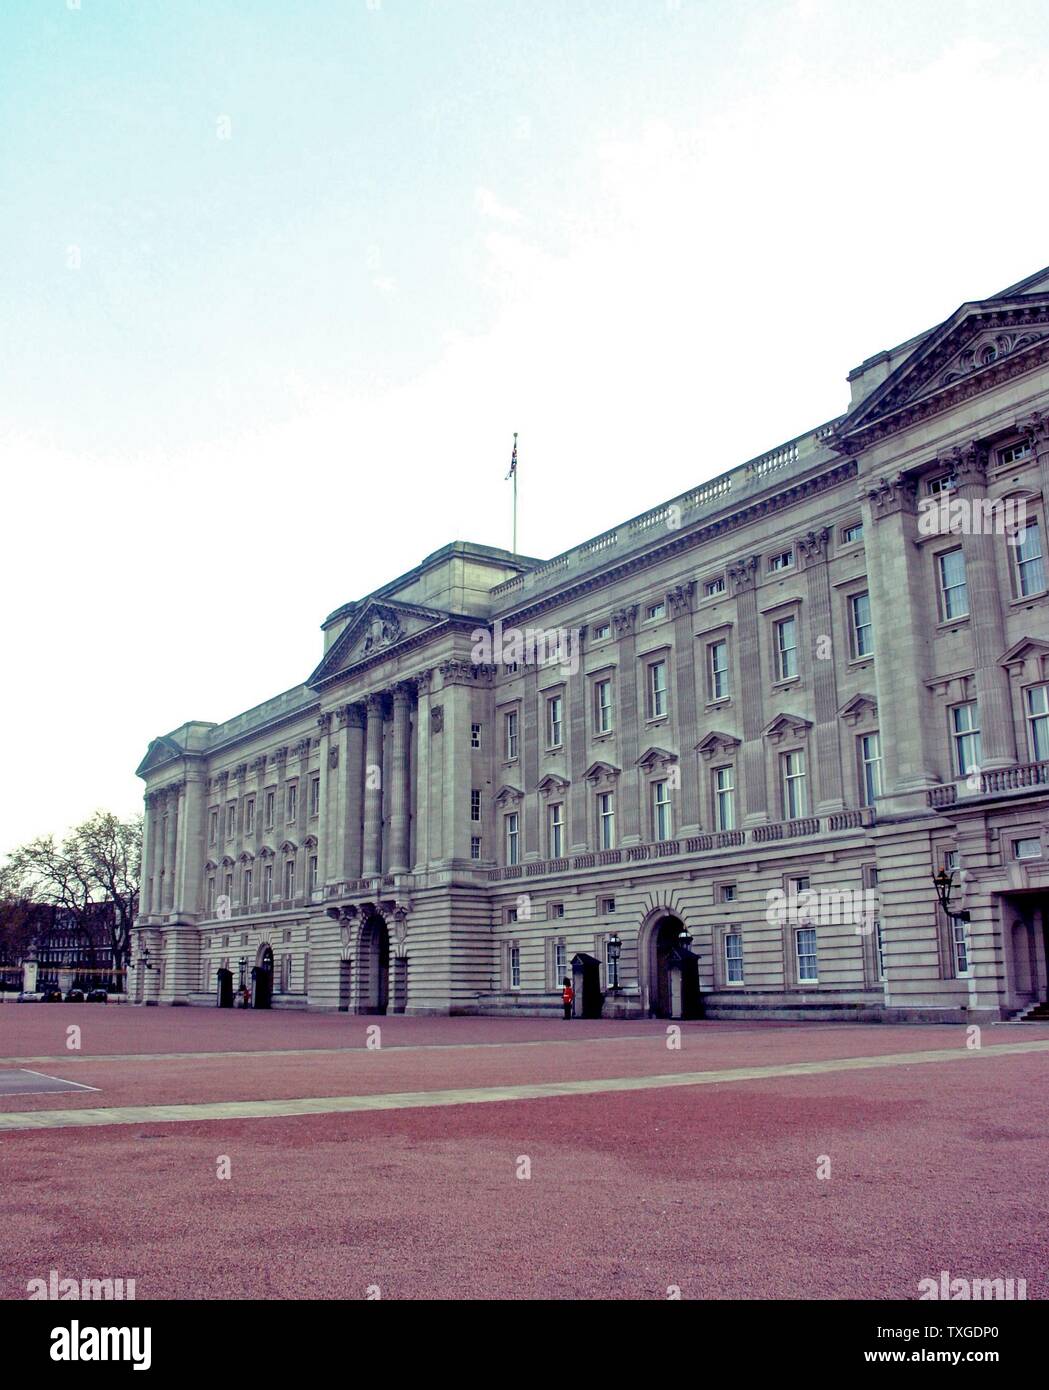 El exterior del Palacio de Buckingham, residencia y lugar de trabajo principal de la monarquía del Reino Unido. Fecha de 2014 Foto de stock